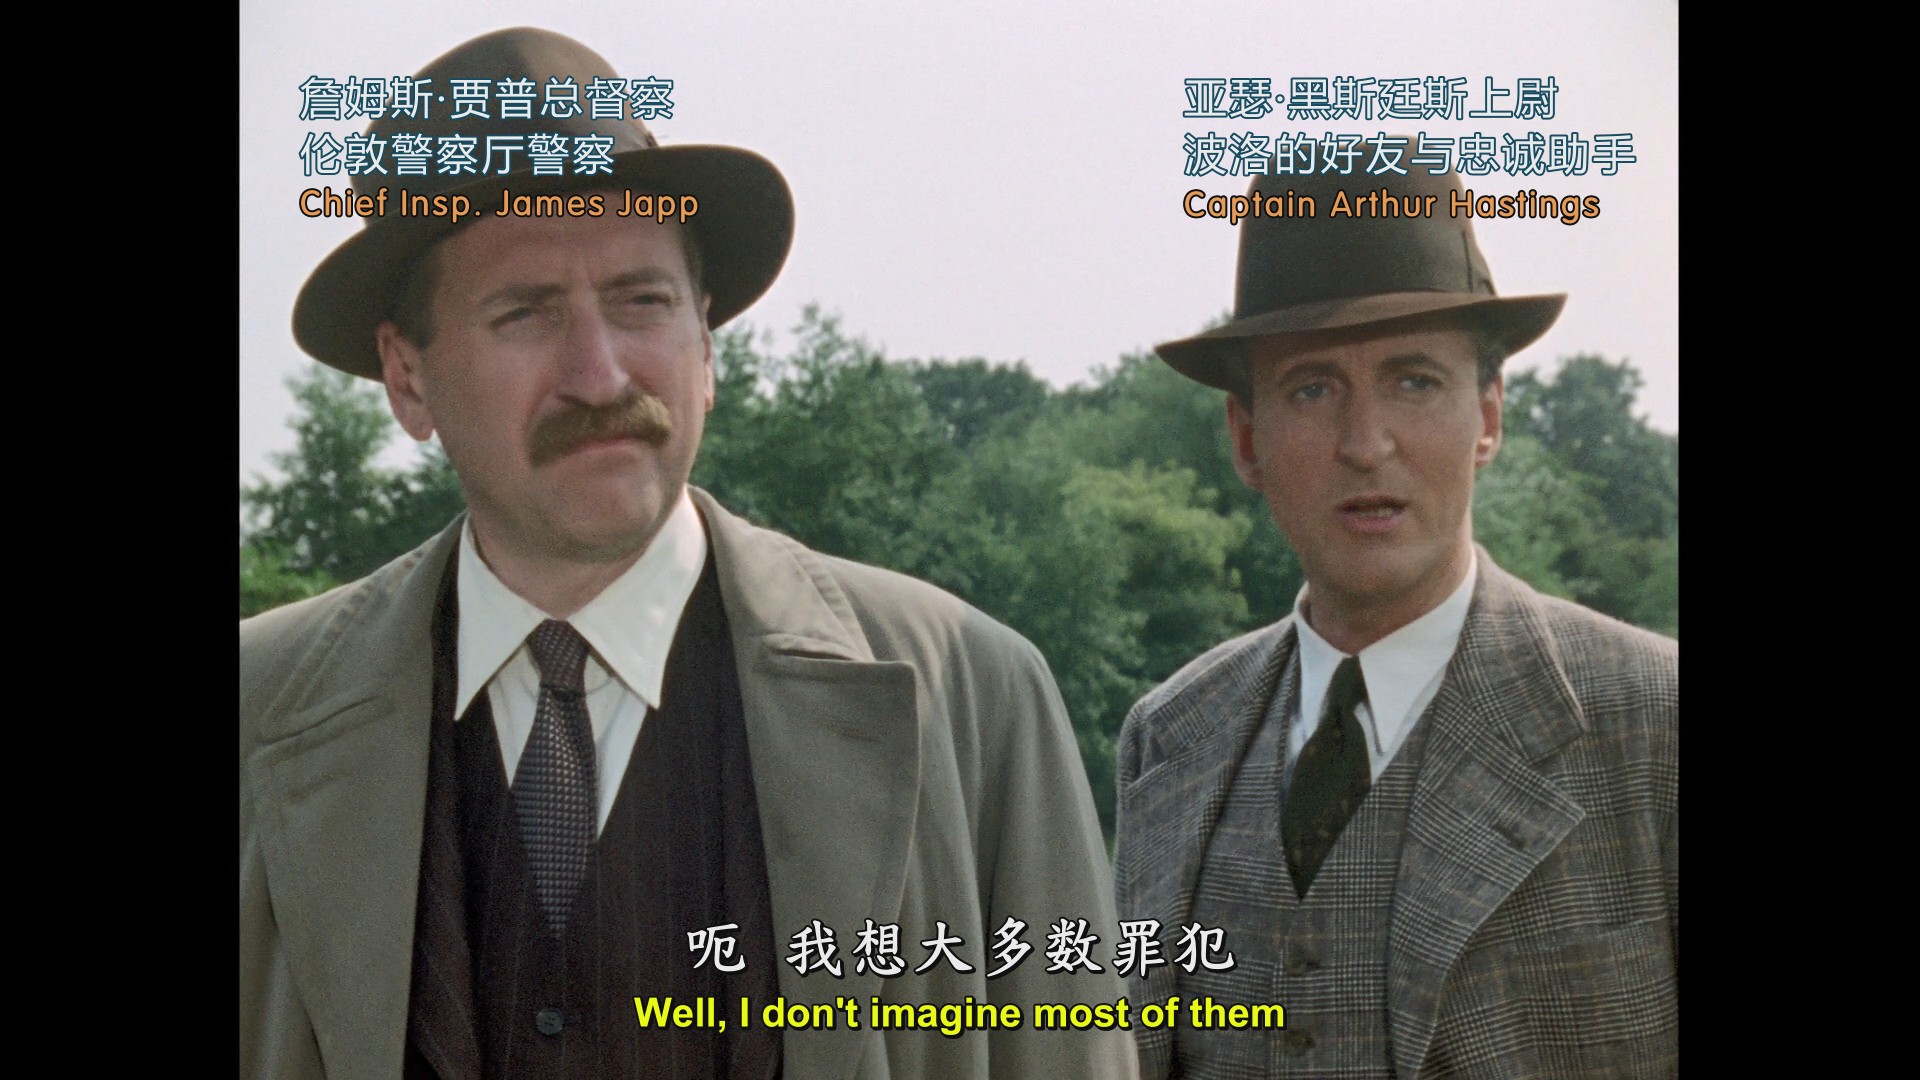 大侦探波洛 第二季第1碟 [美版蓝光原盘][DIY正片.简繁+双语字幕（海盗、深影字幕）] Poirot S2 Disc1 1990 Acorn Blu-ray 1080p AVC DD 2.0-blucook#160@CHDBits [44.22 GB ]-5.jpg